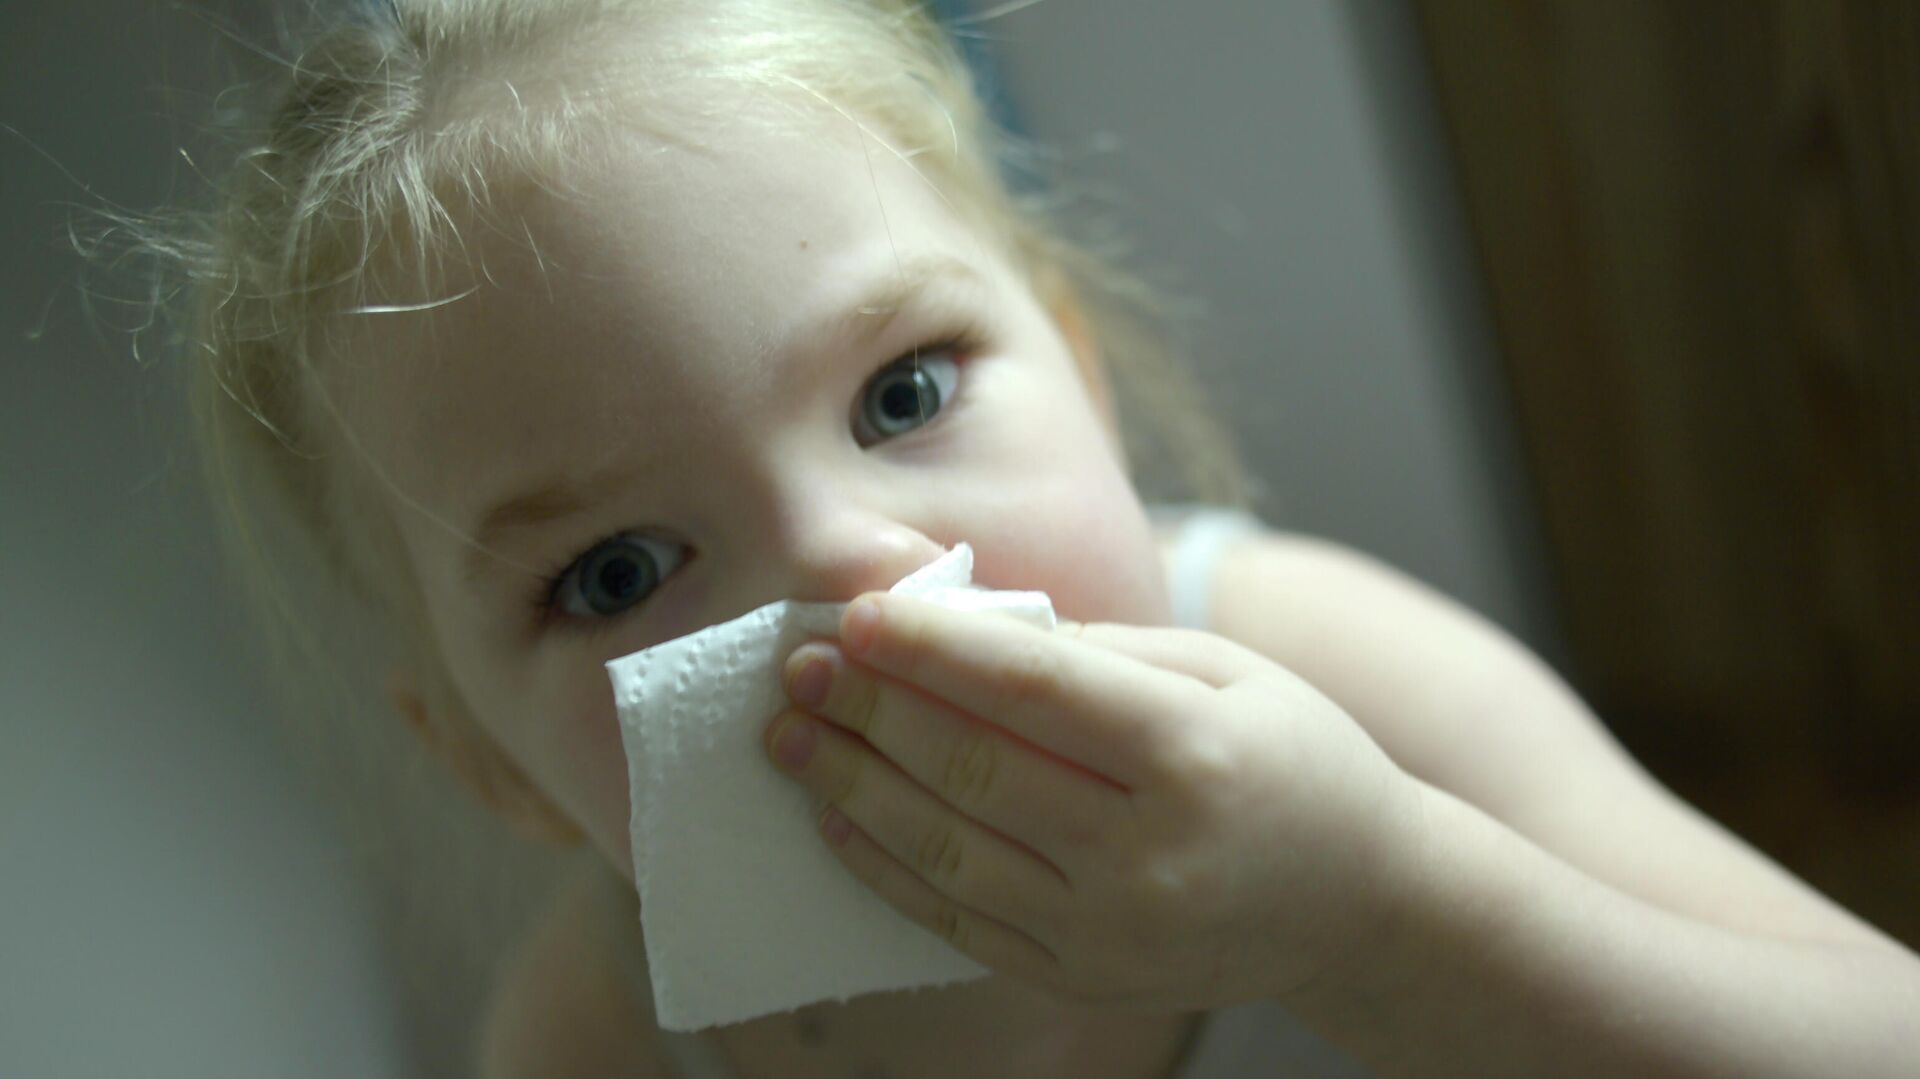 Постоянная заложенность носа у ребенка